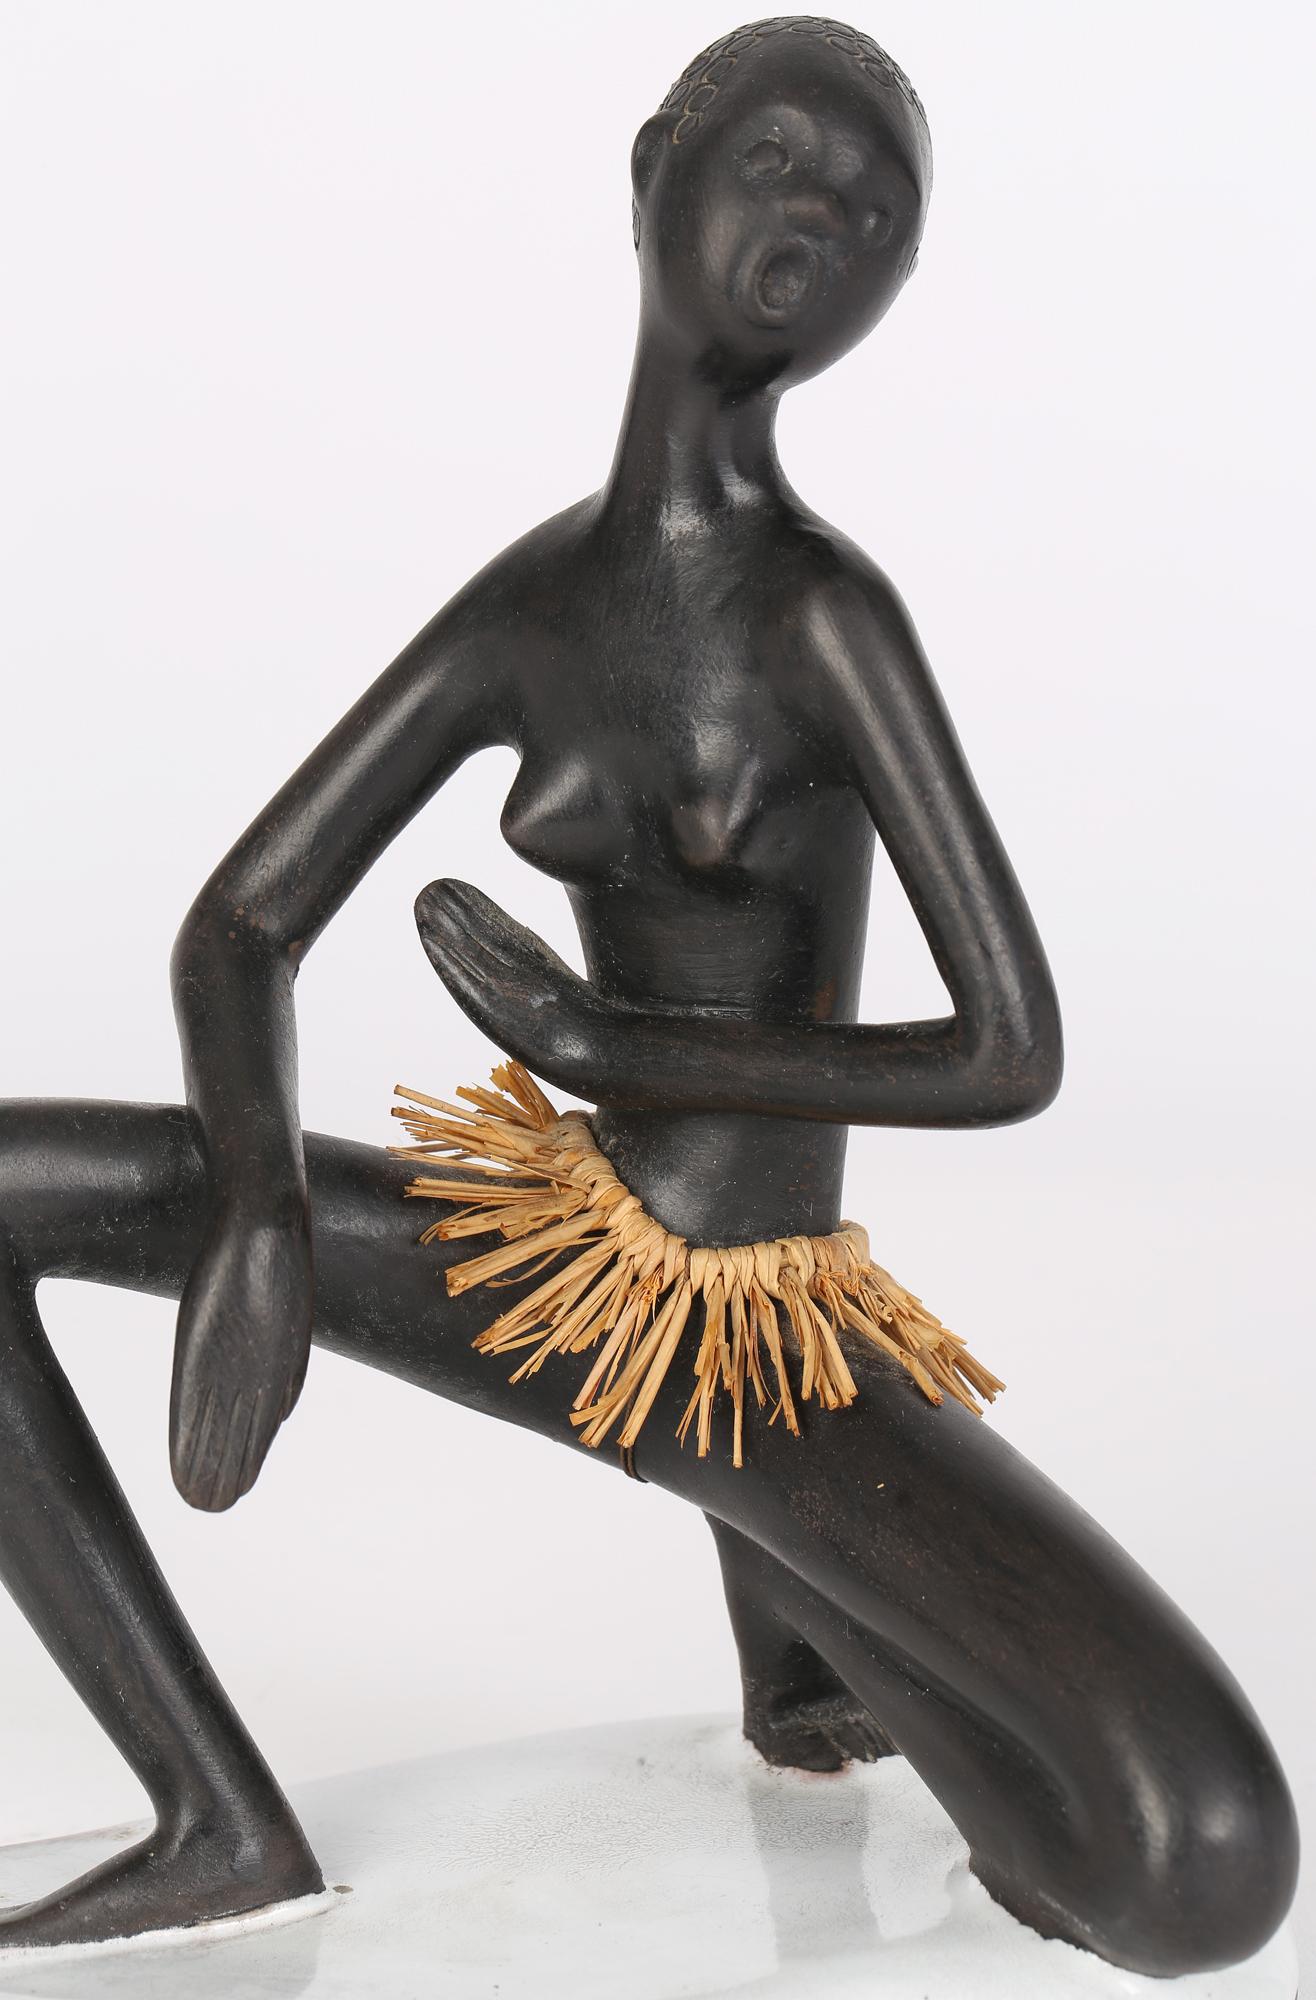 Ravissante figurine autrichienne en céramique du milieu du siècle représentant une femme africaine nue portant une jupe en herbe, réalisée à Vienne par Leopold Anzengruber (1912-1979) et datant d'environ 1950. La femme est agenouillée, peut-être